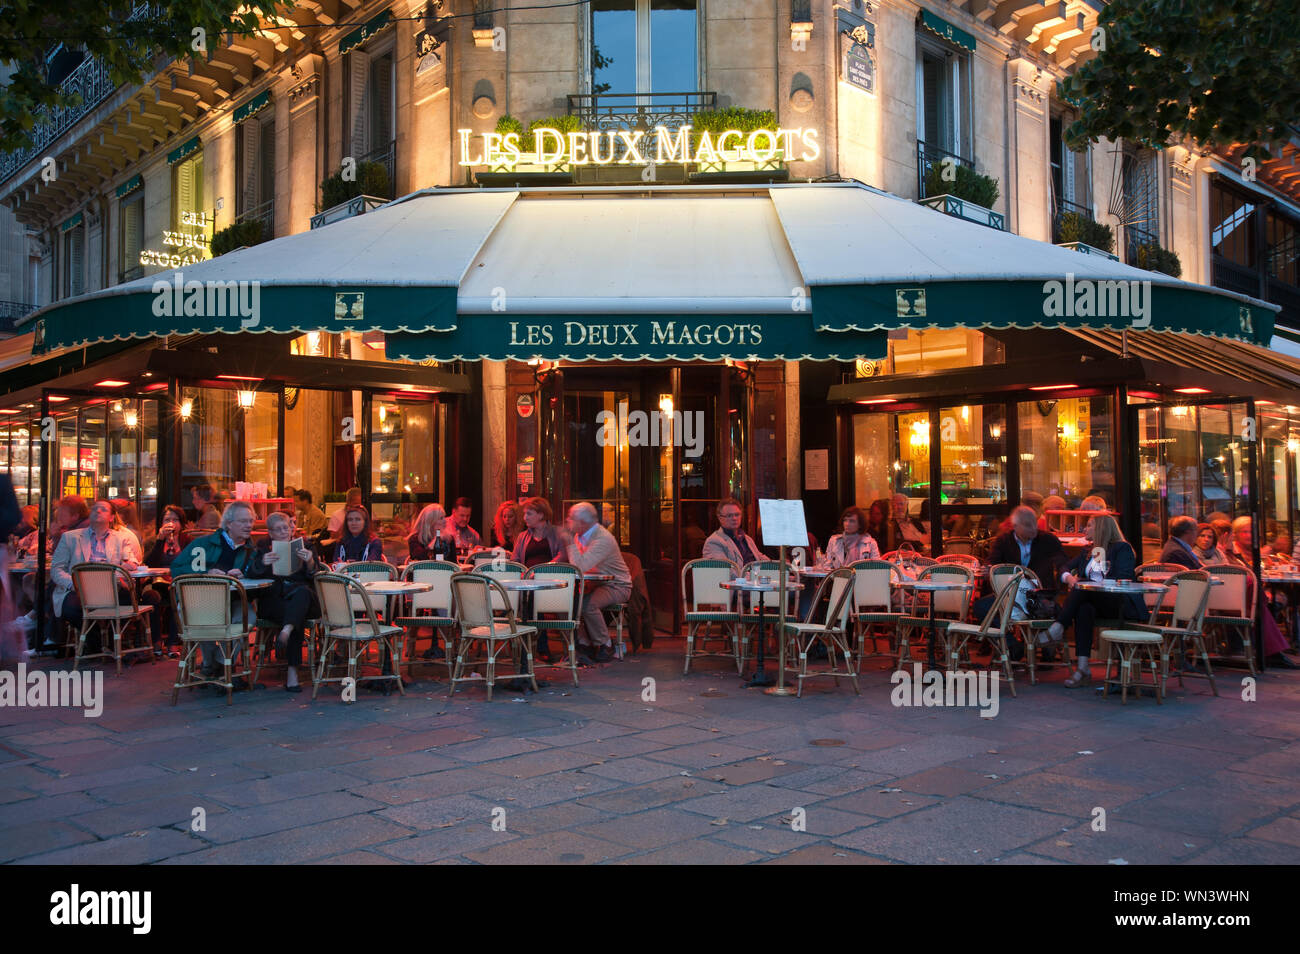 Les Deux Magots ist ein berühmtes Pariser Café und Lokal im Bezirk St. Germain-des-Prés am Boulevard Saint-Germain. Stock Photo